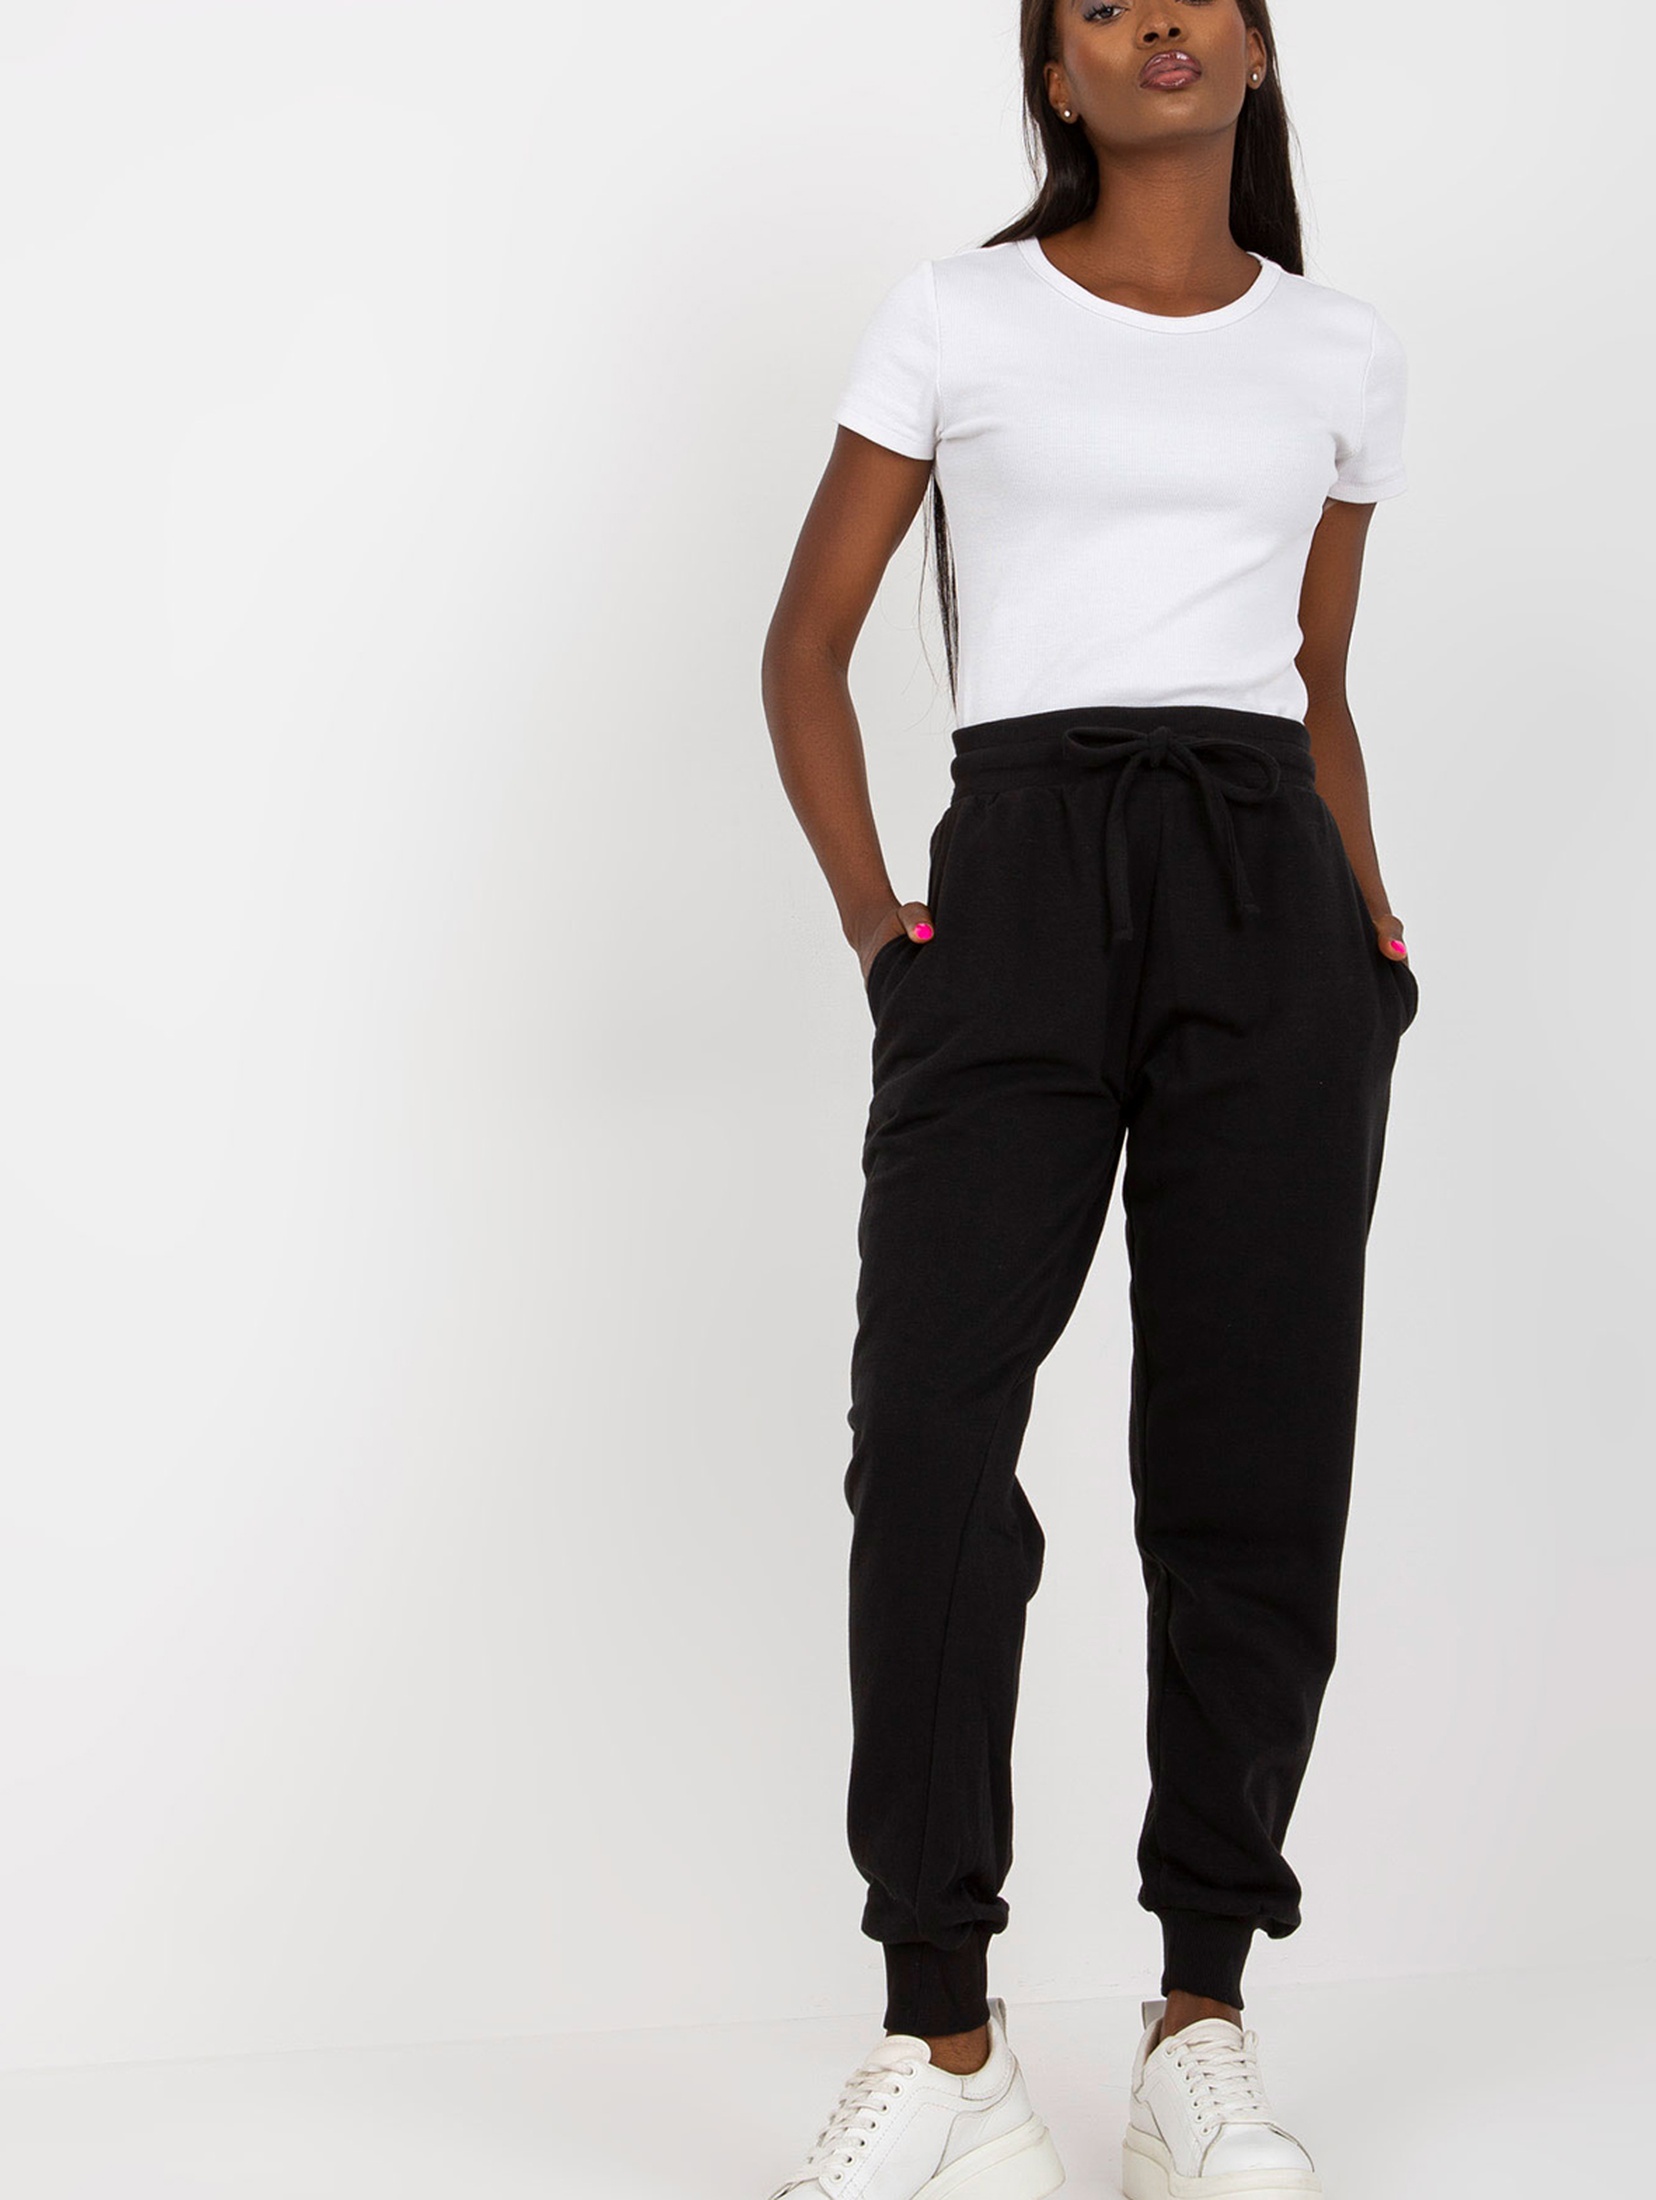 BASIC FEEL GOOD Czarne dresowe spodnie basic z kieszeniami